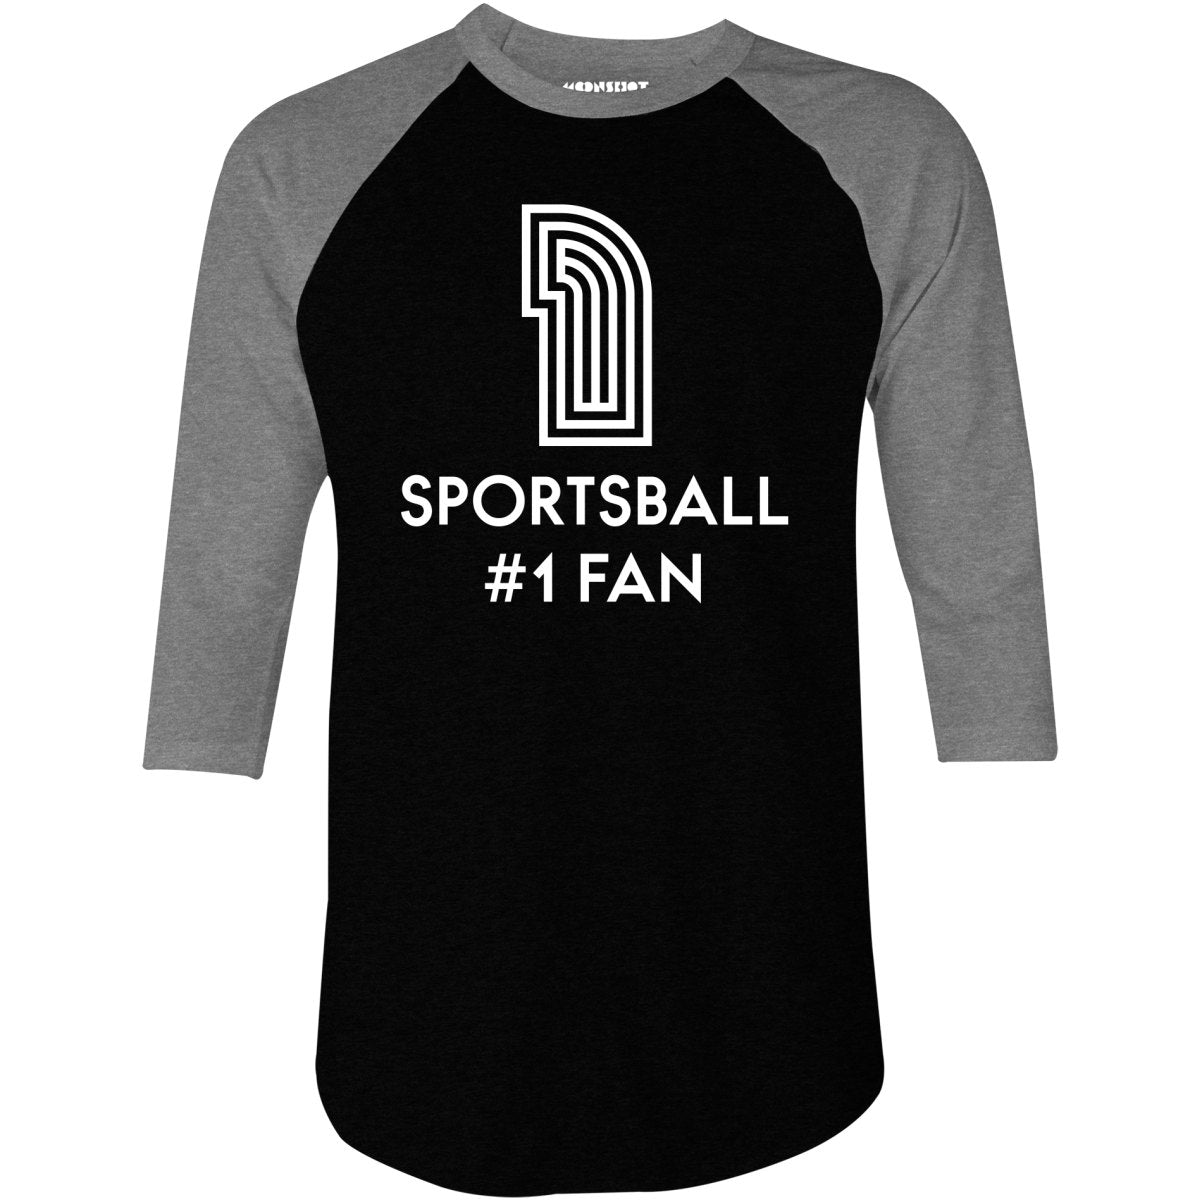 Sportsball #1 Fan - 3/4 Sleeve Raglan T-Shirt